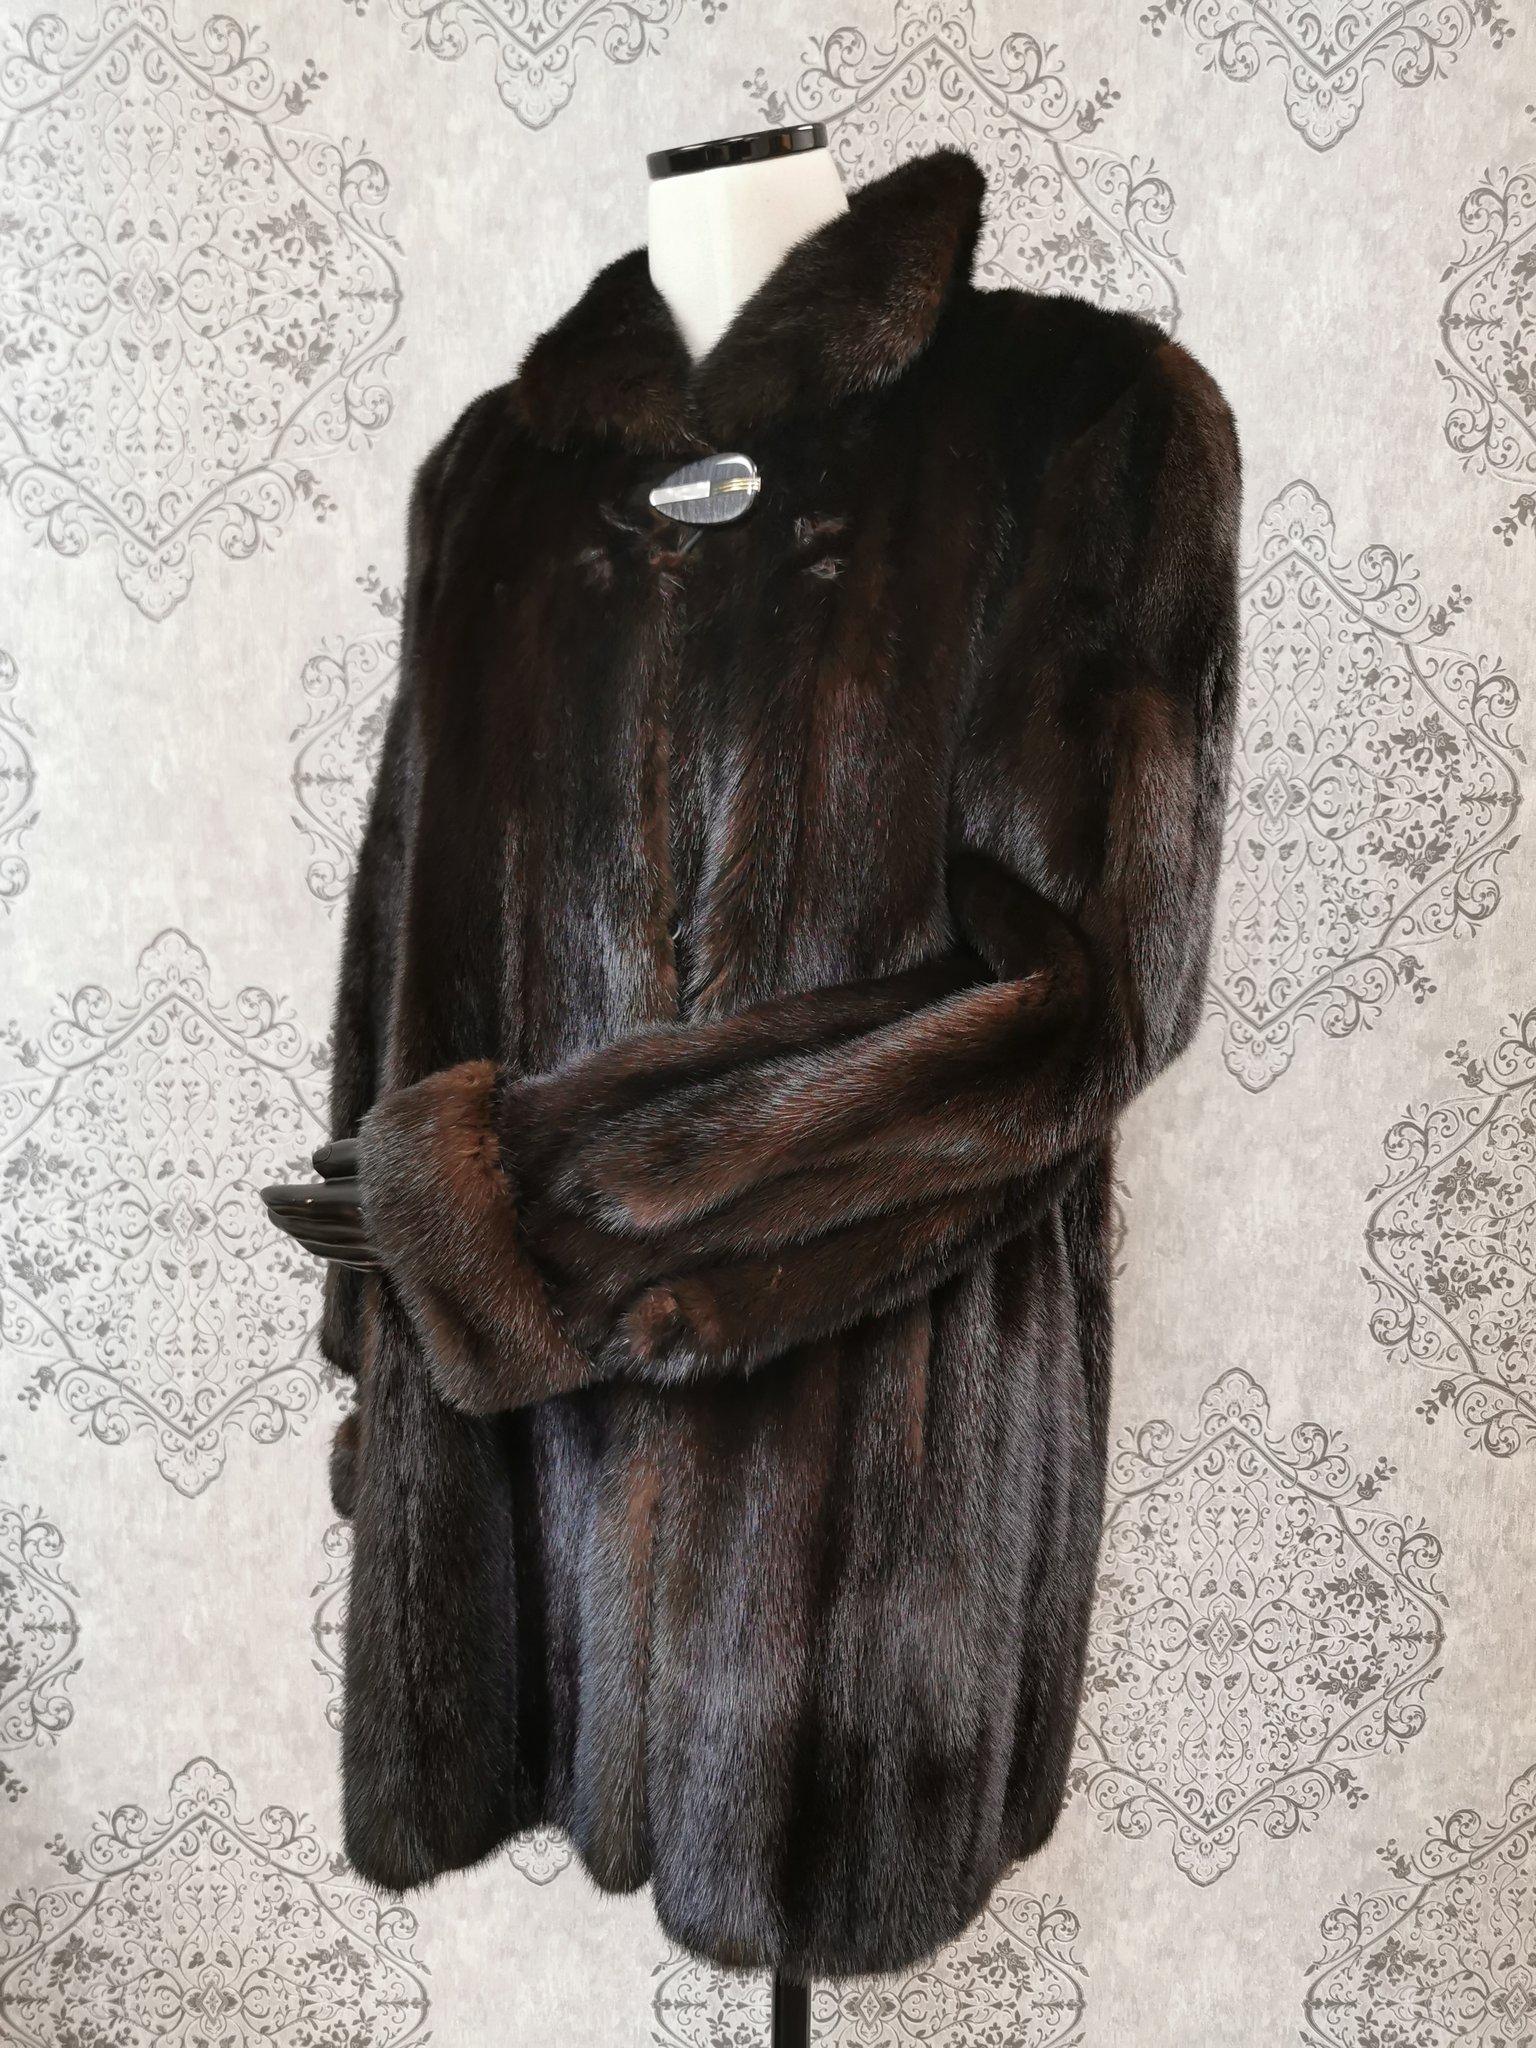 birger christensen mink coat